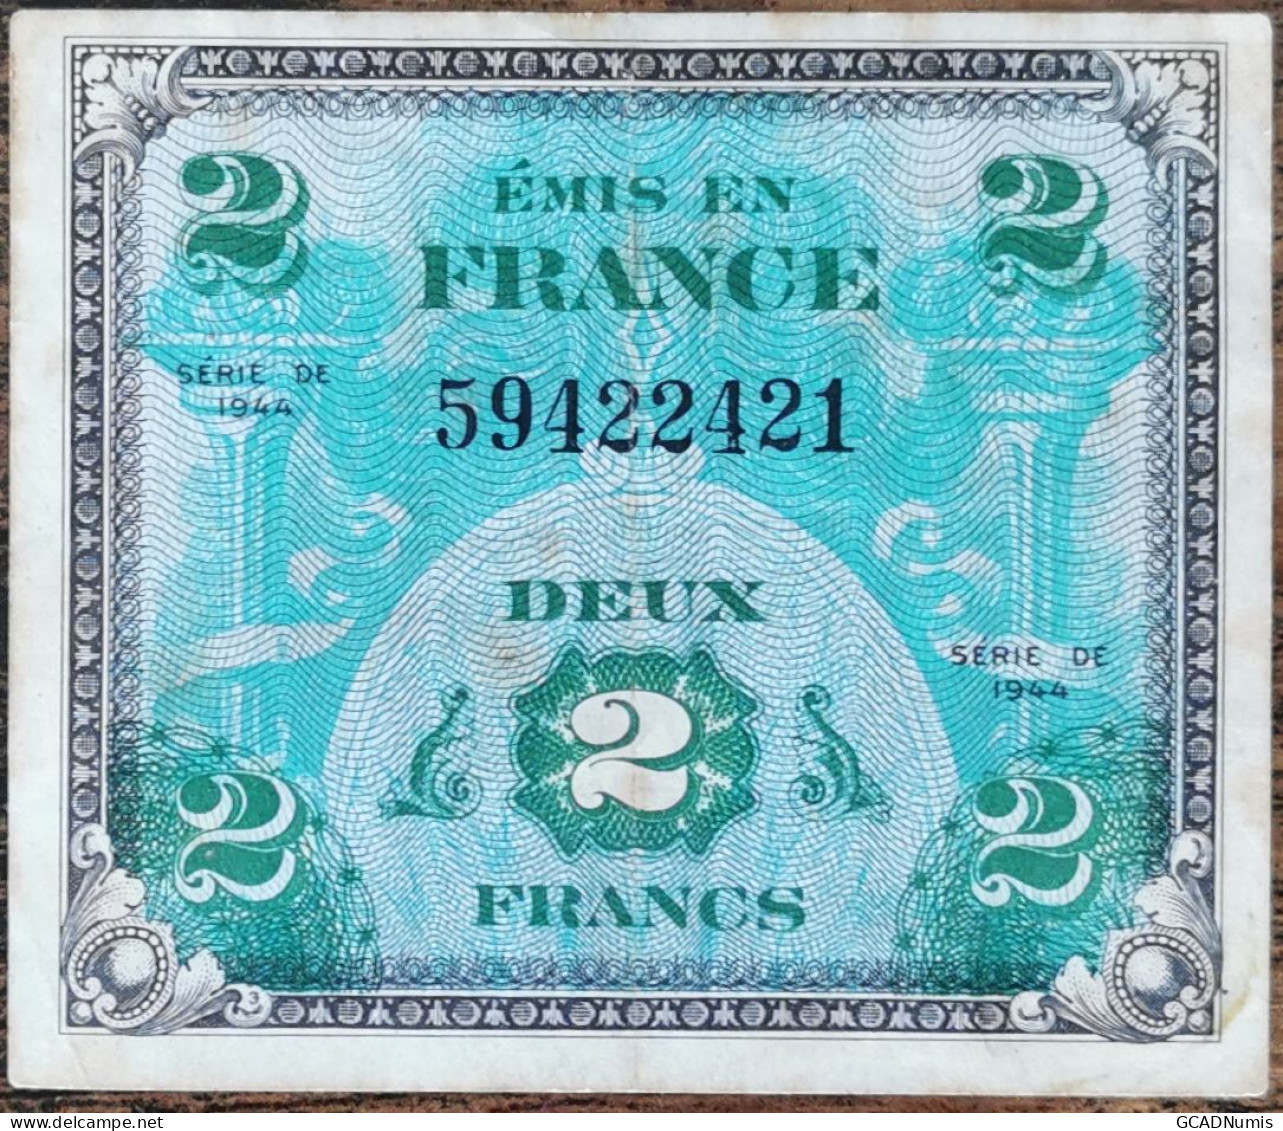 Billet 2 Francs 1944 FRANCE Préparer Par Les USA Pour La Libération 59422421 - 1944 Vlag/Frankrijk